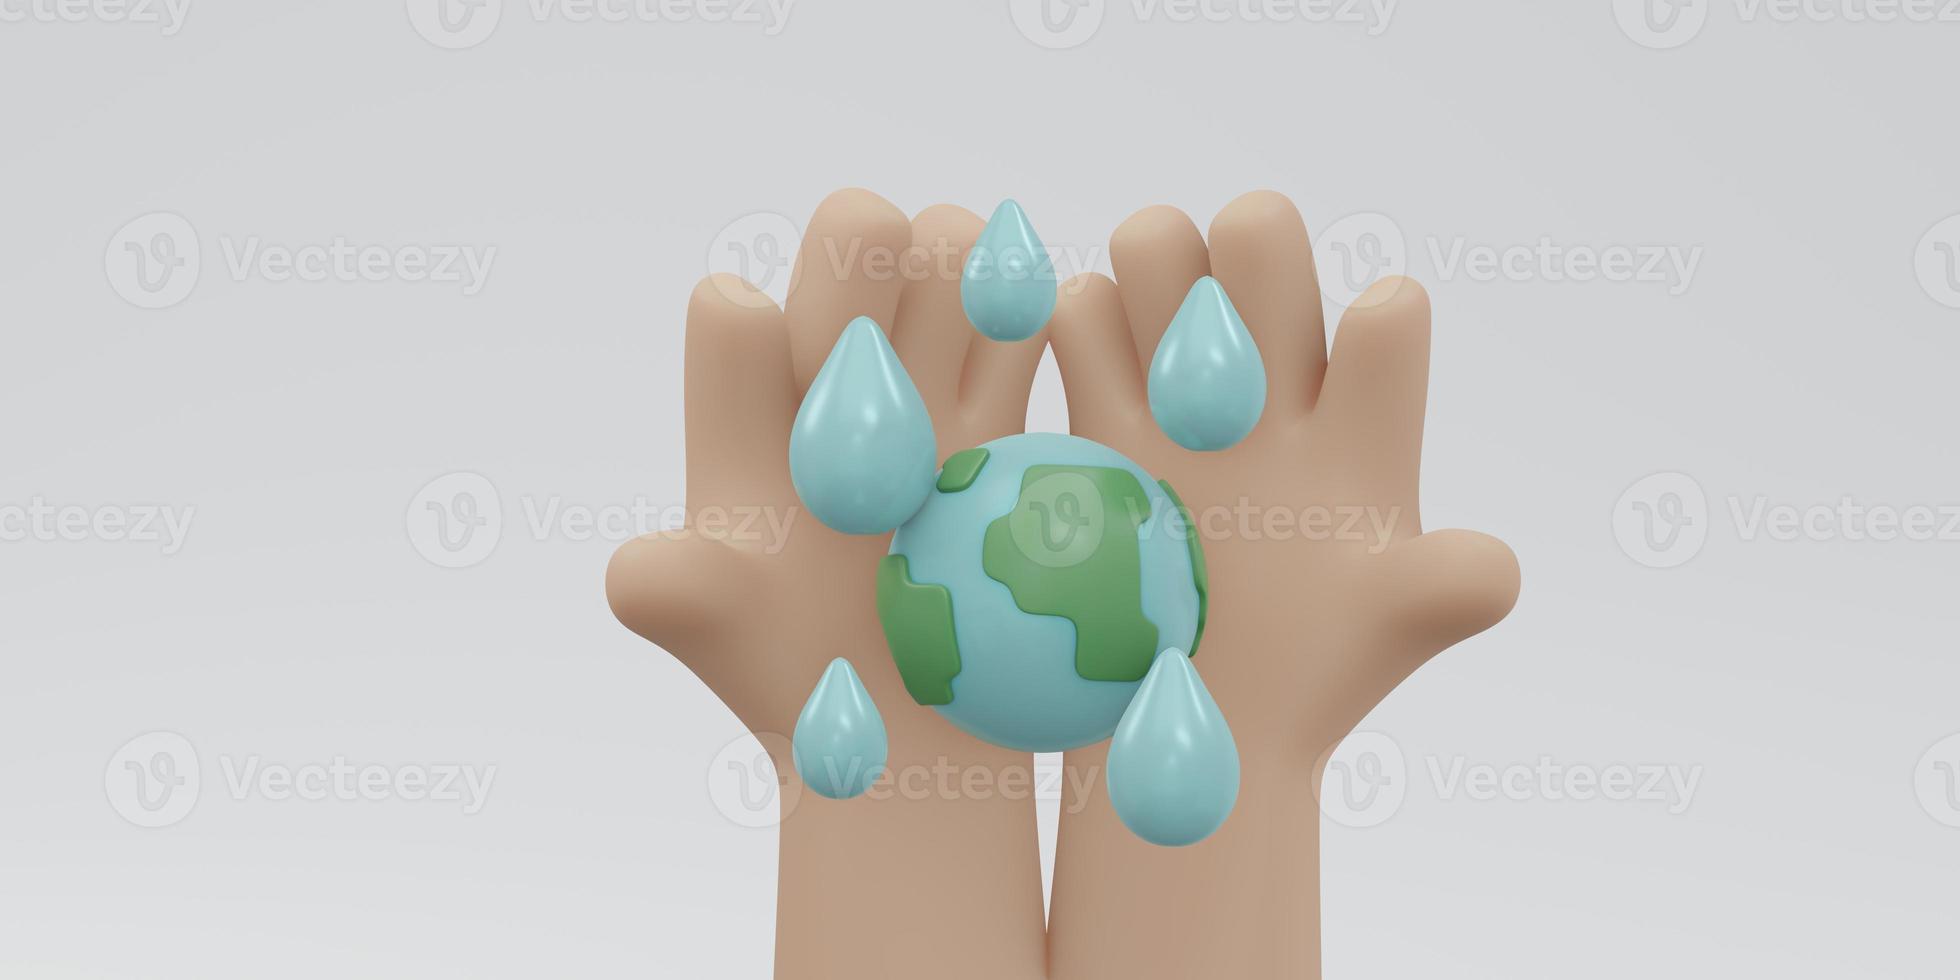 Representación 3d de la mano que sostiene el icono de la tierra con una gota de agua con espacio de copia en el concepto de fondo blanco del día mundial del agua. estilo de dibujos animados de ilustración de procesamiento 3d. foto